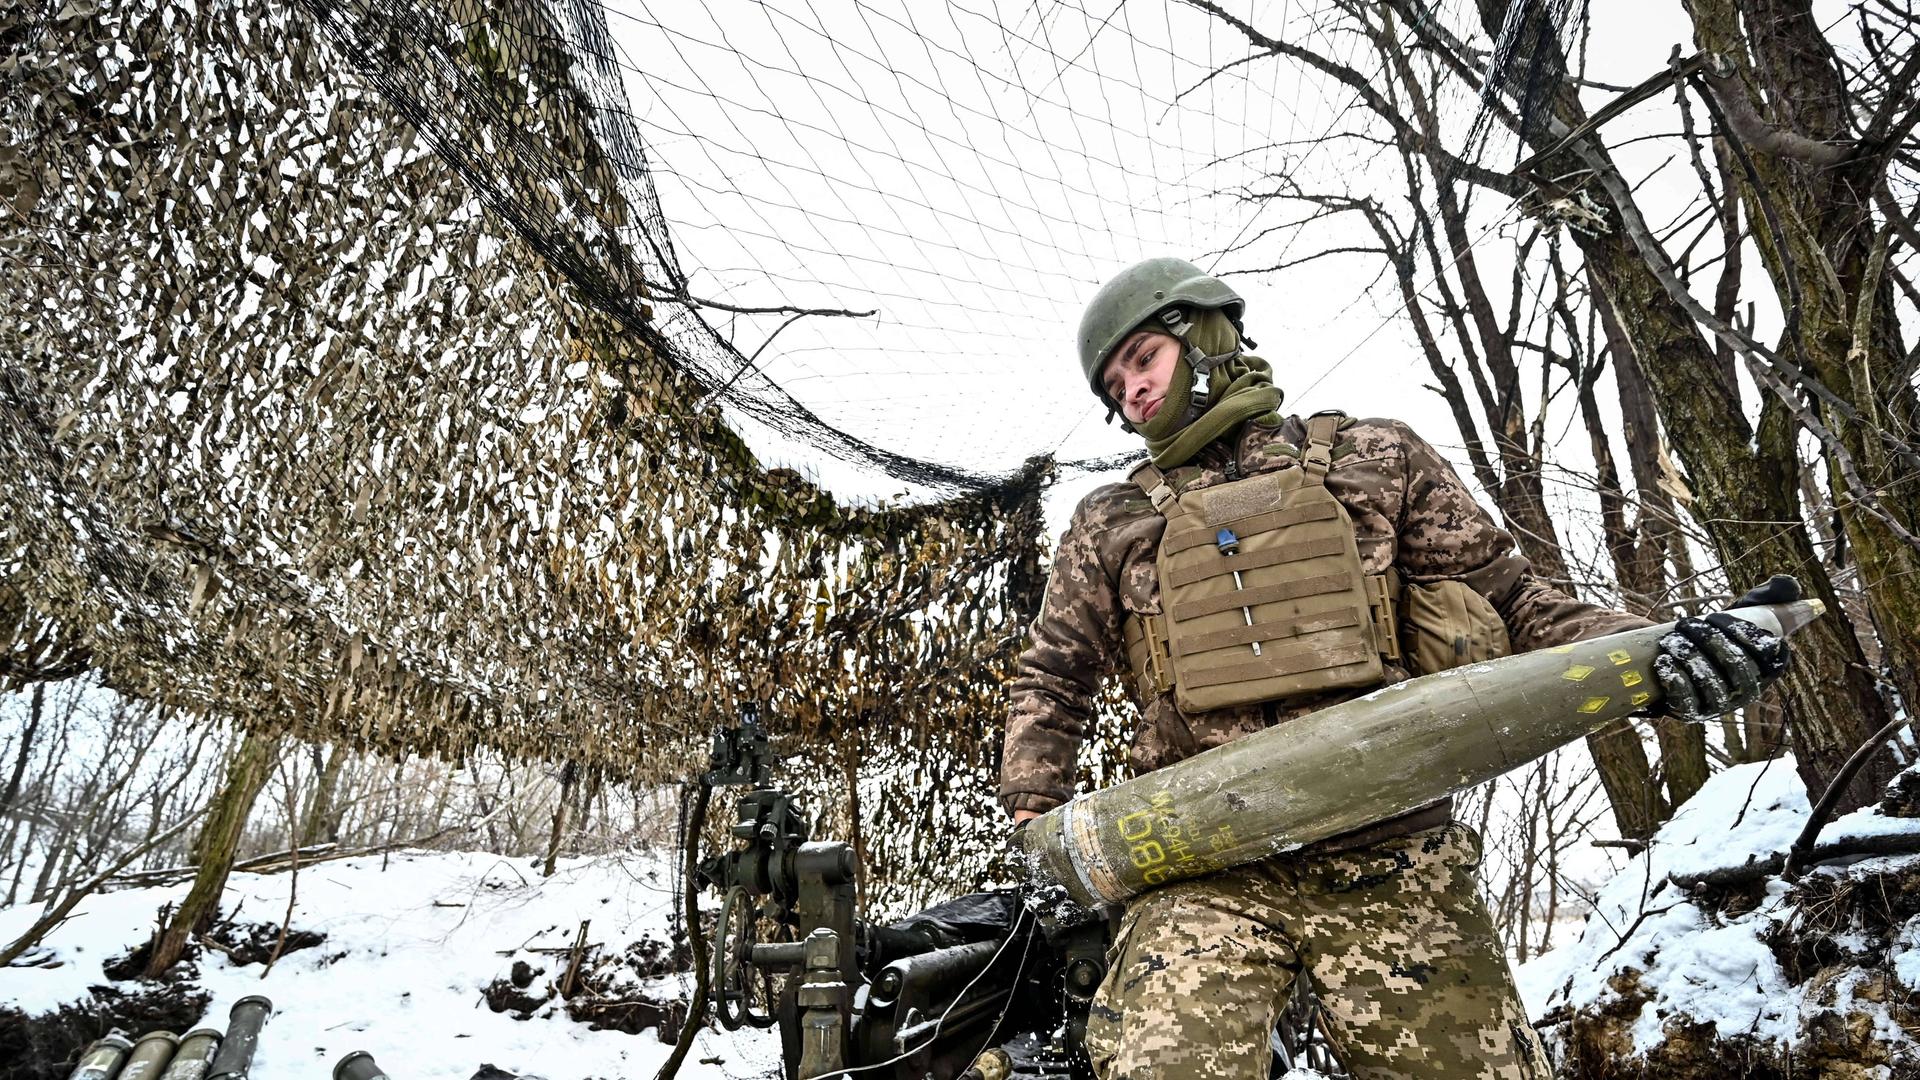 Ein Soldat des 66. separaten Kanonenartilleriebataillons der 406. separaten Artilleriebrigade der ukrainischen Streitkräfte wird vor der amerikanischen Haubitze M777 fotografiert.